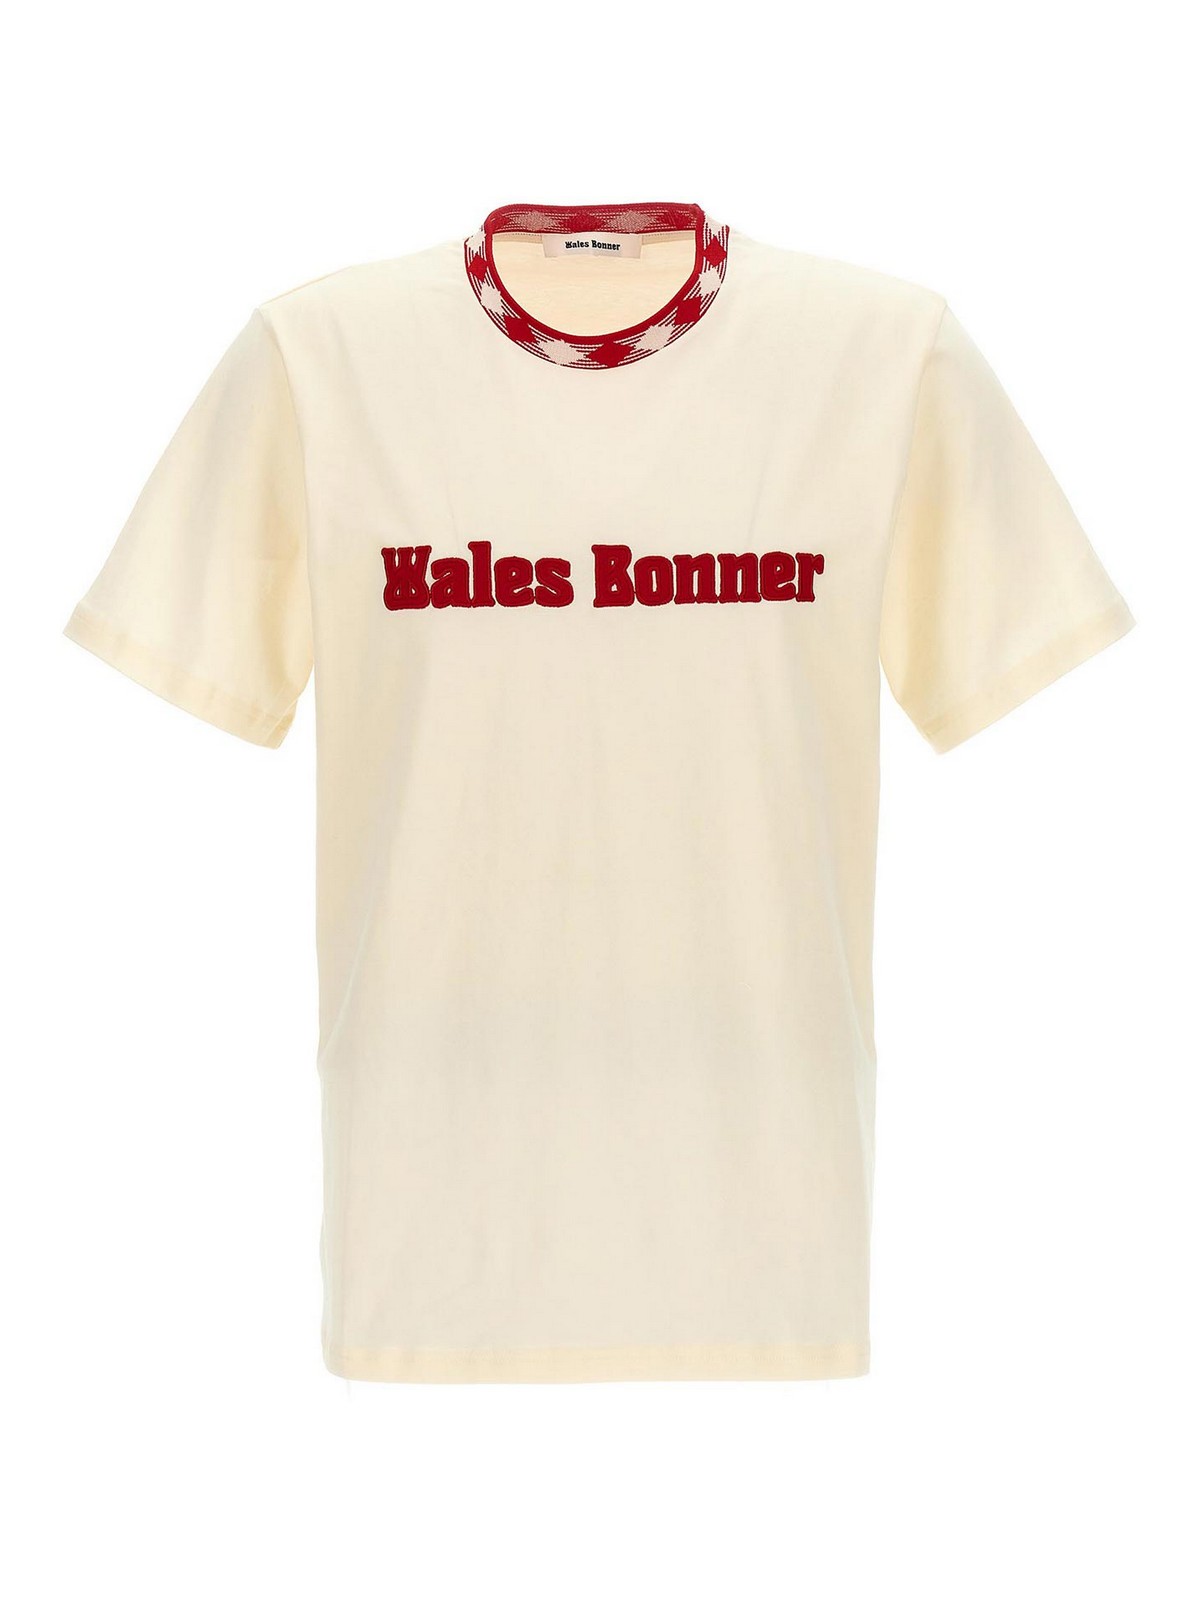 Wales Bonner Original T-shirt In Multicolour